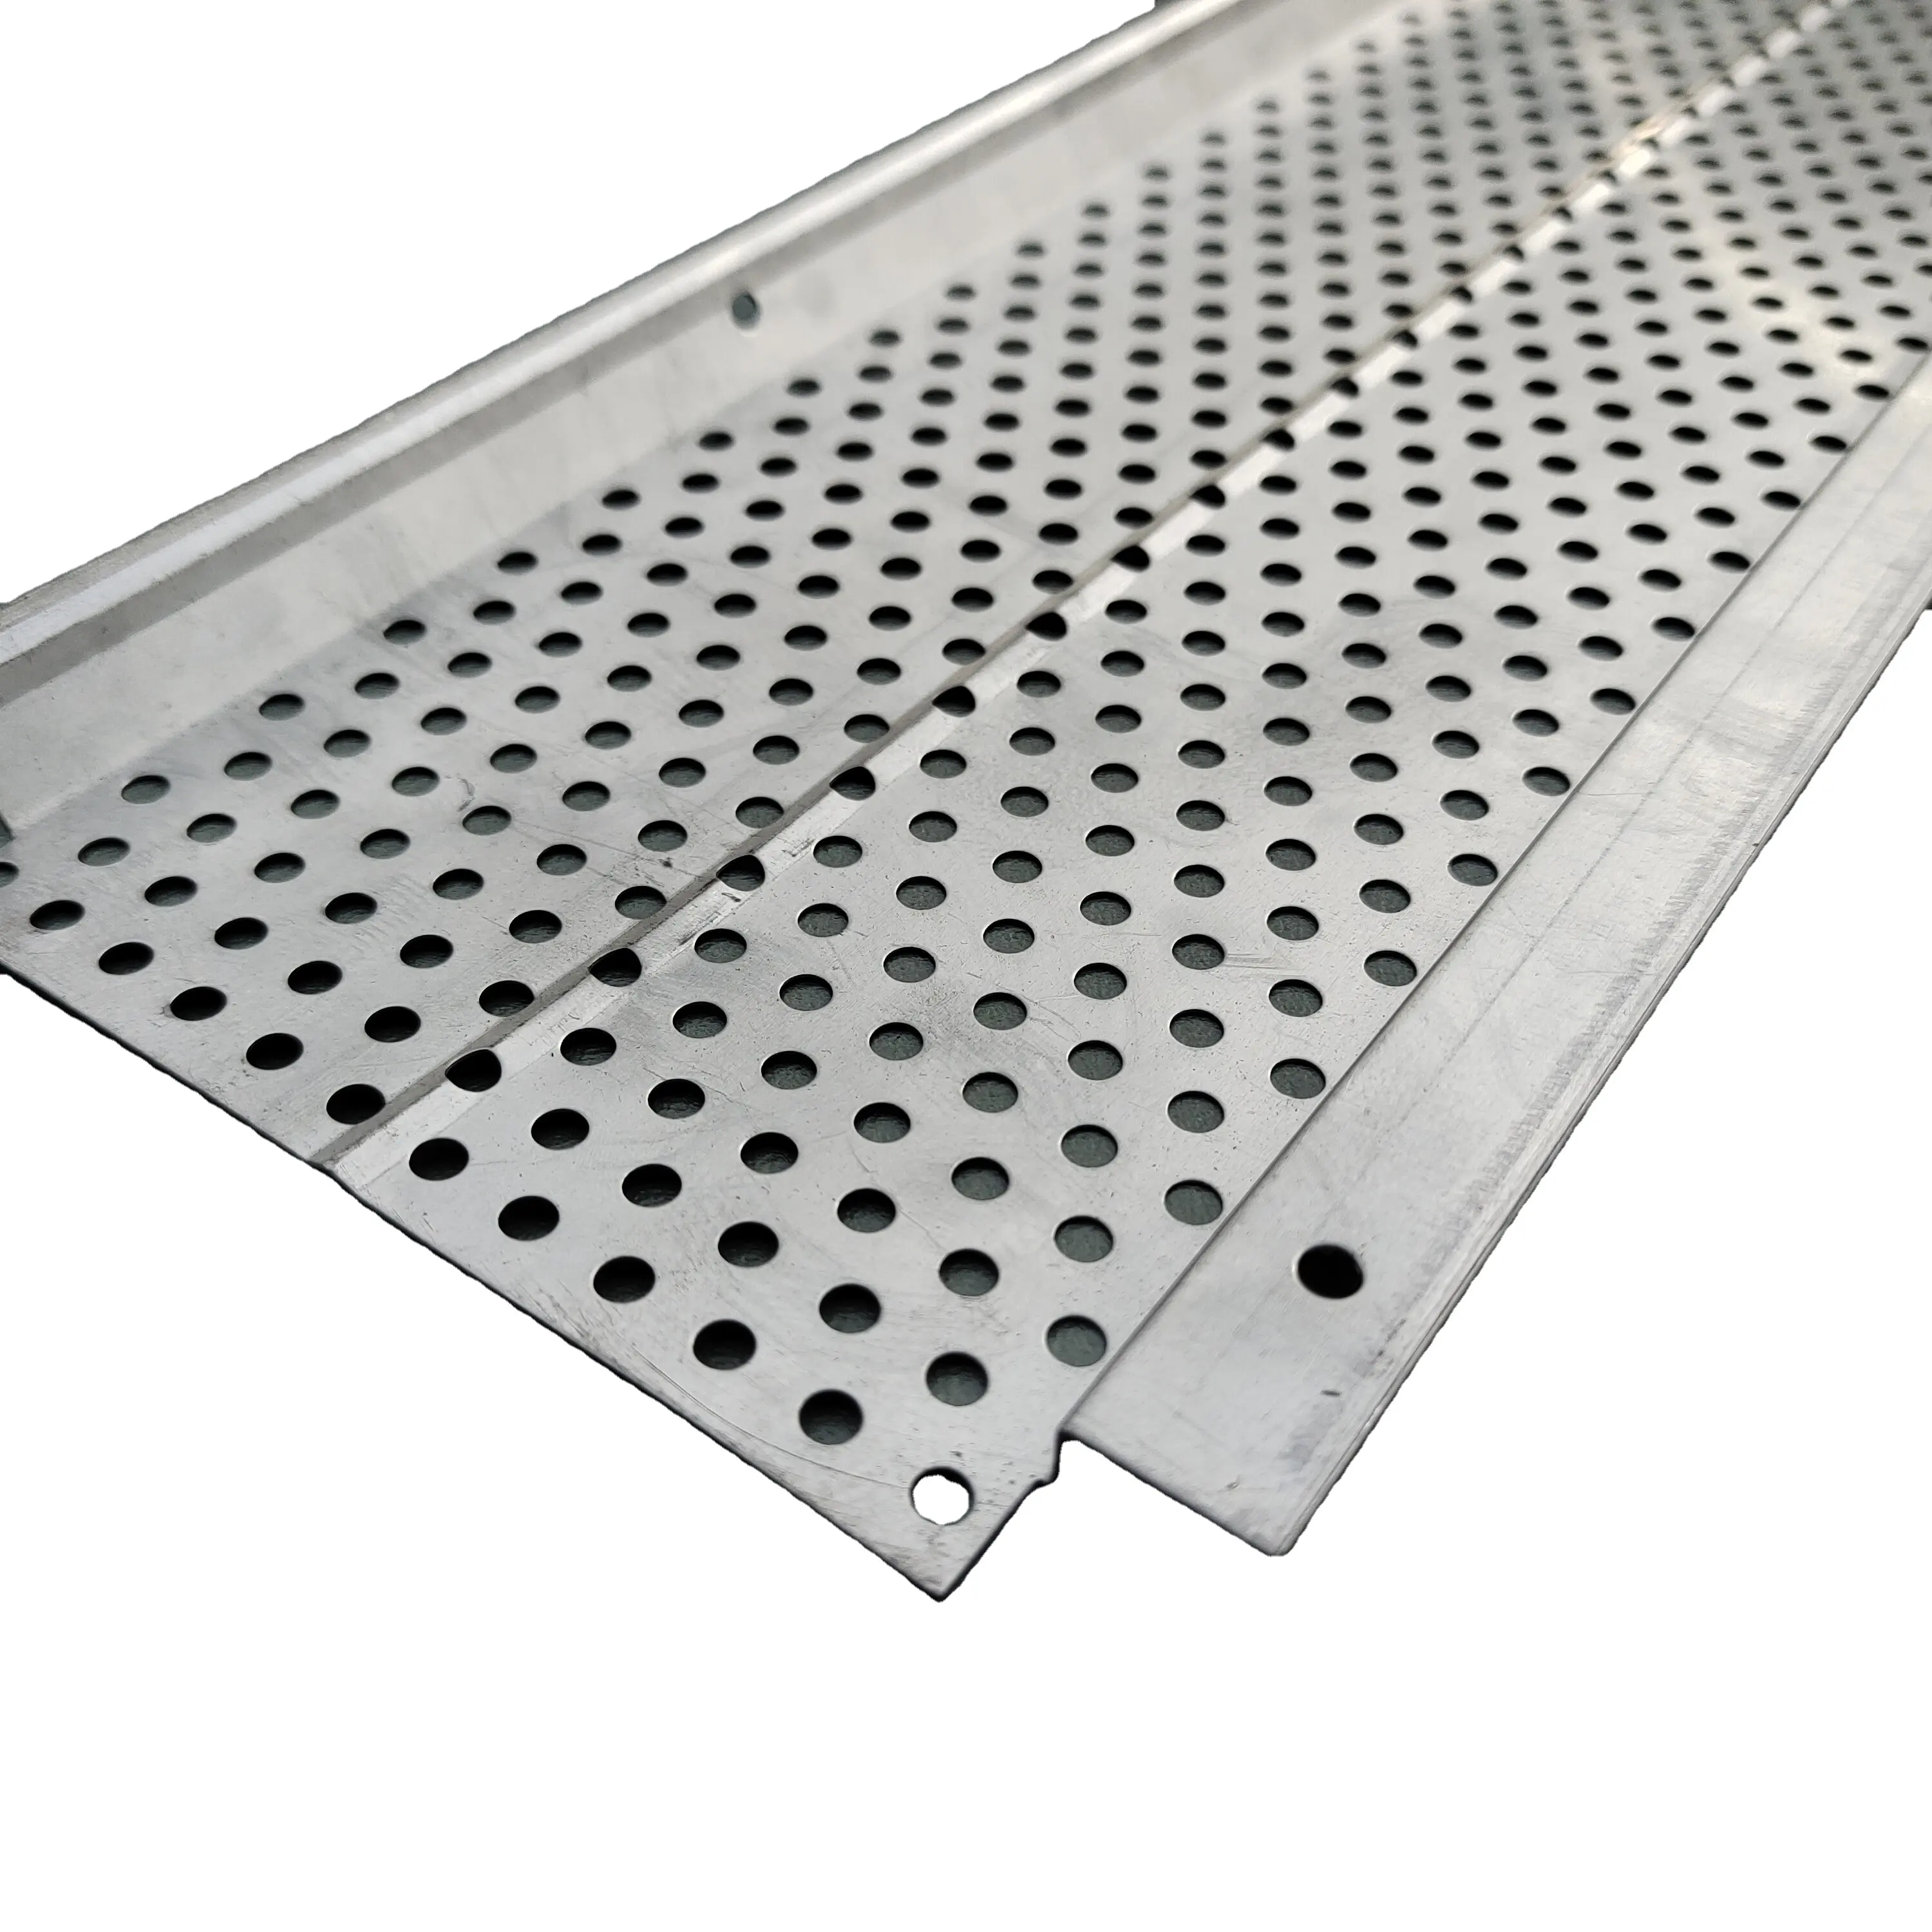 Protezione della grondaia in alluminio con rete metallica traforata in acciaio inox